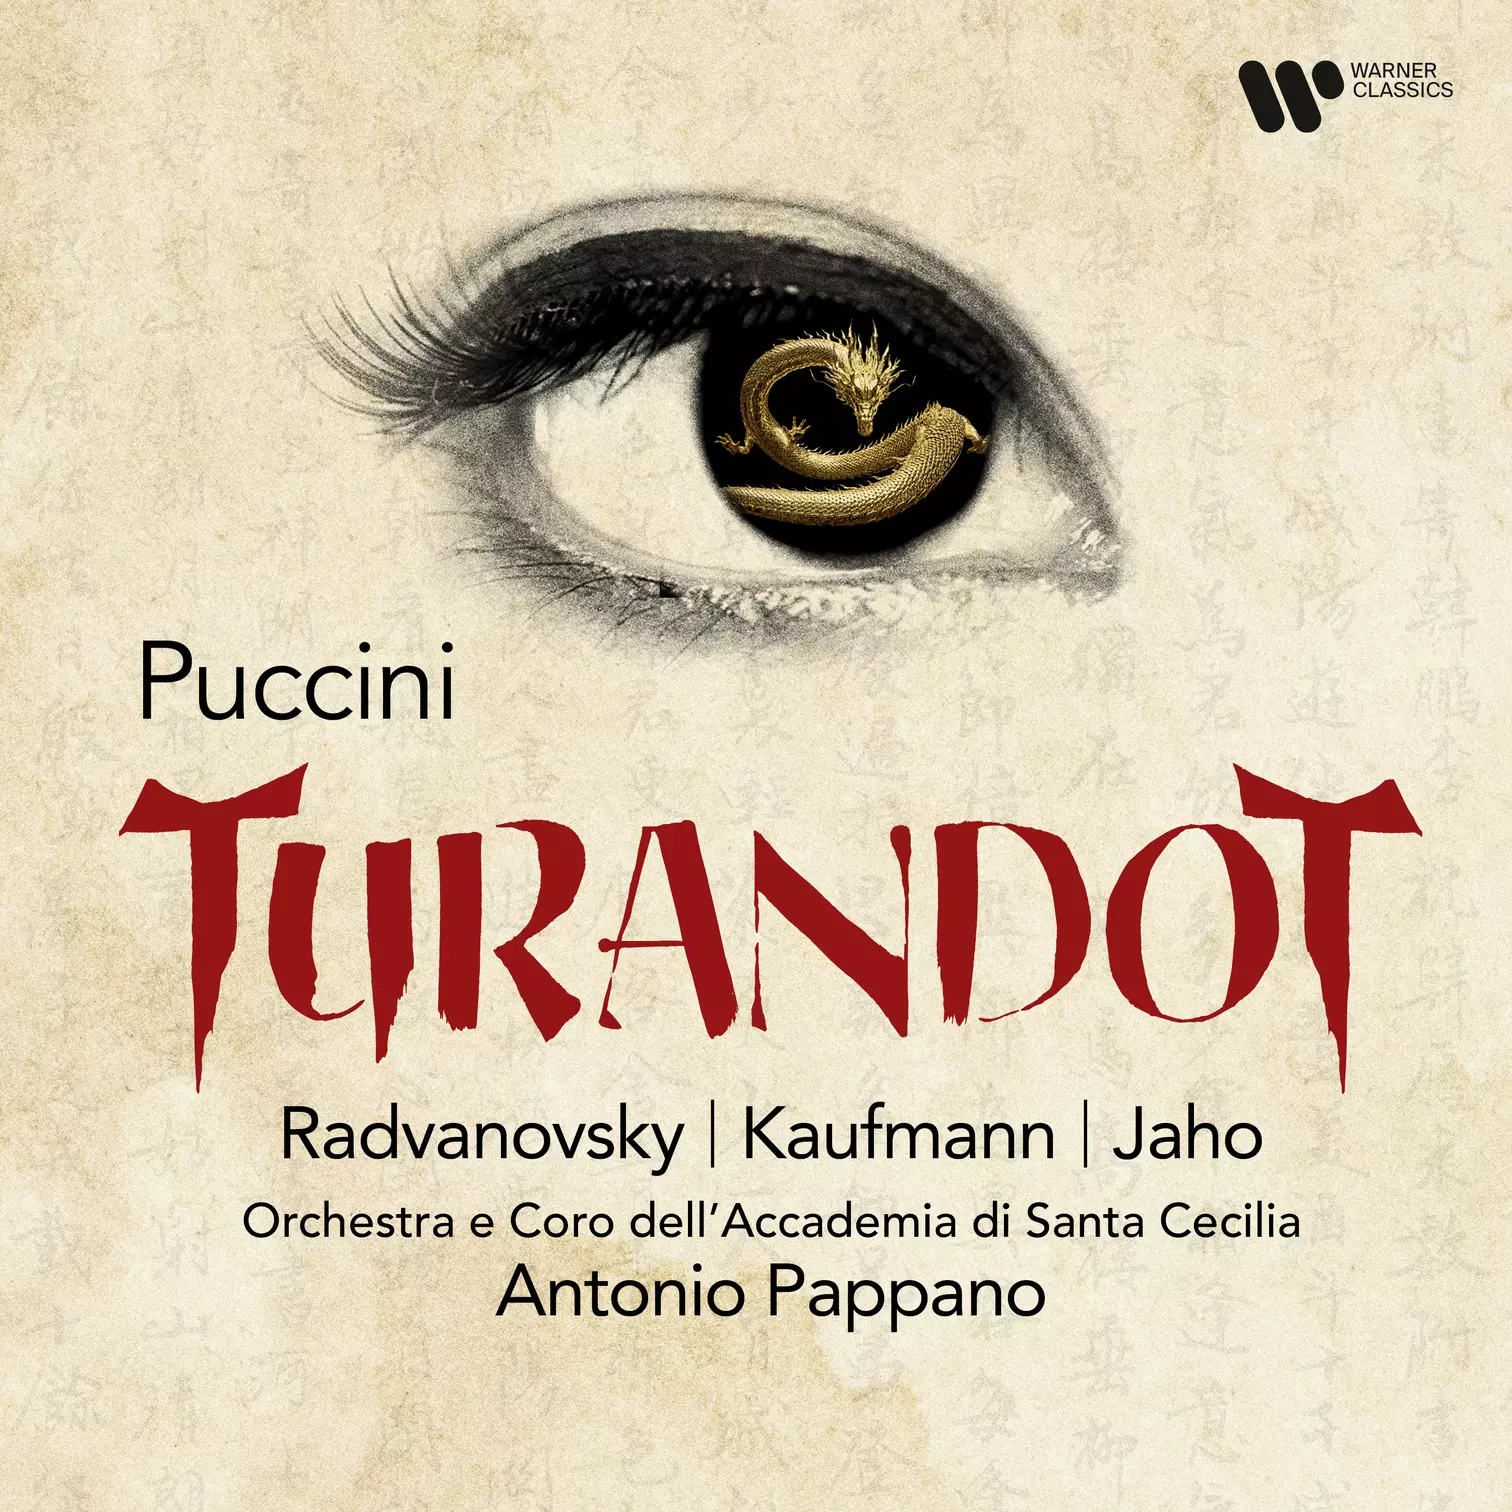 Turandot Antonio Pappano Orchestra dell' Accademia Nazionale di Santa Cecilia